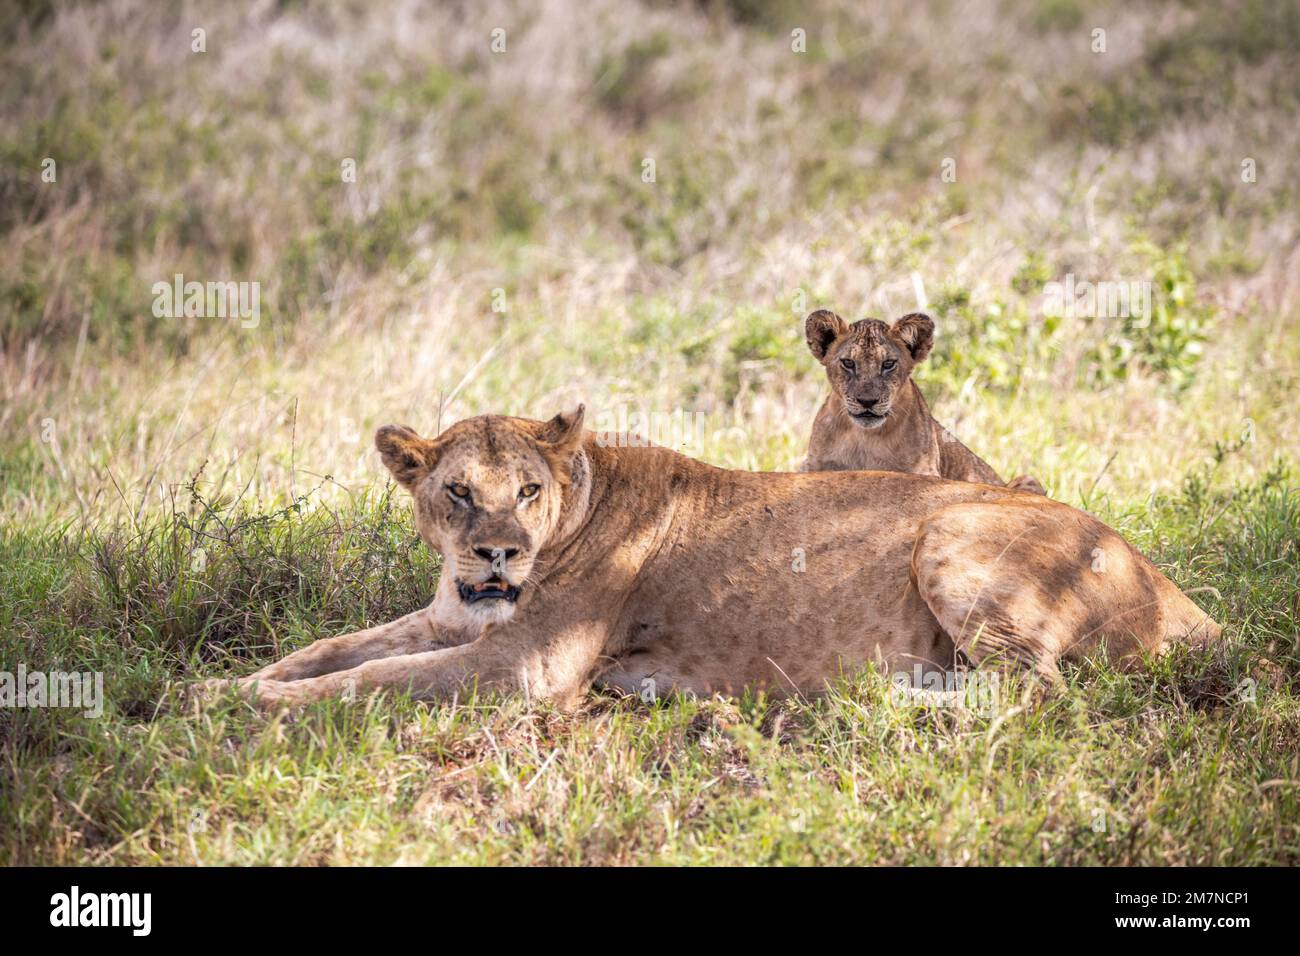 Lion africain, femme Panthera Leo, couché dans l'herbe avec sa jeune savane. Parc national de Tsavo West, Taita Hills, Kenya, Afrique Banque D'Images